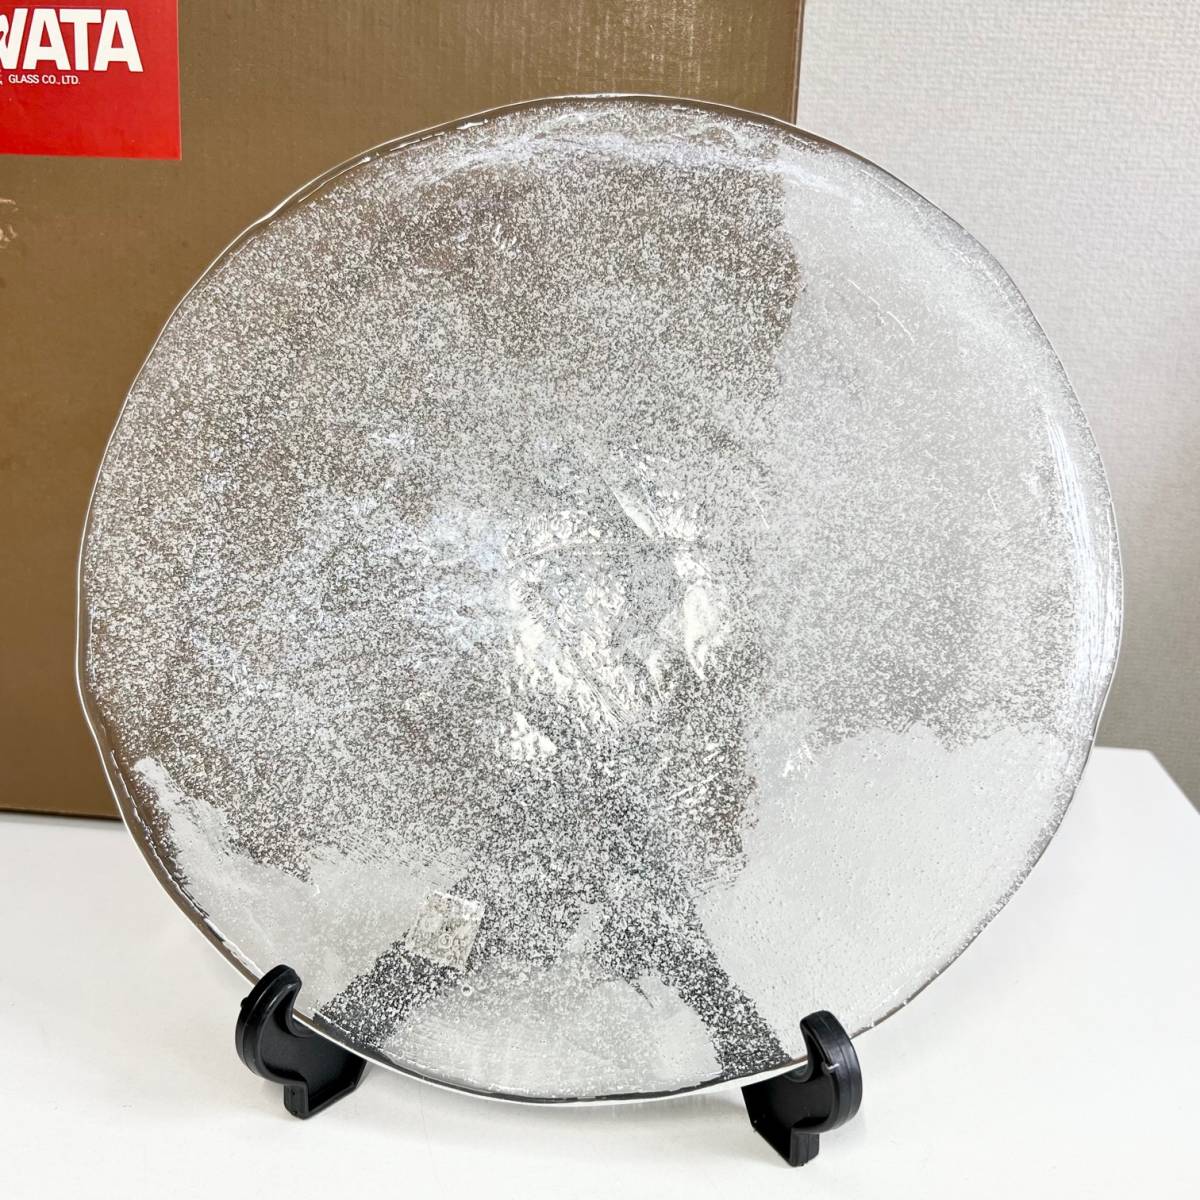 岩田硝子 IWATAGLASS 岩田ガラス ガラス皿 約30cm 大皿 盛皿 フルーツ 